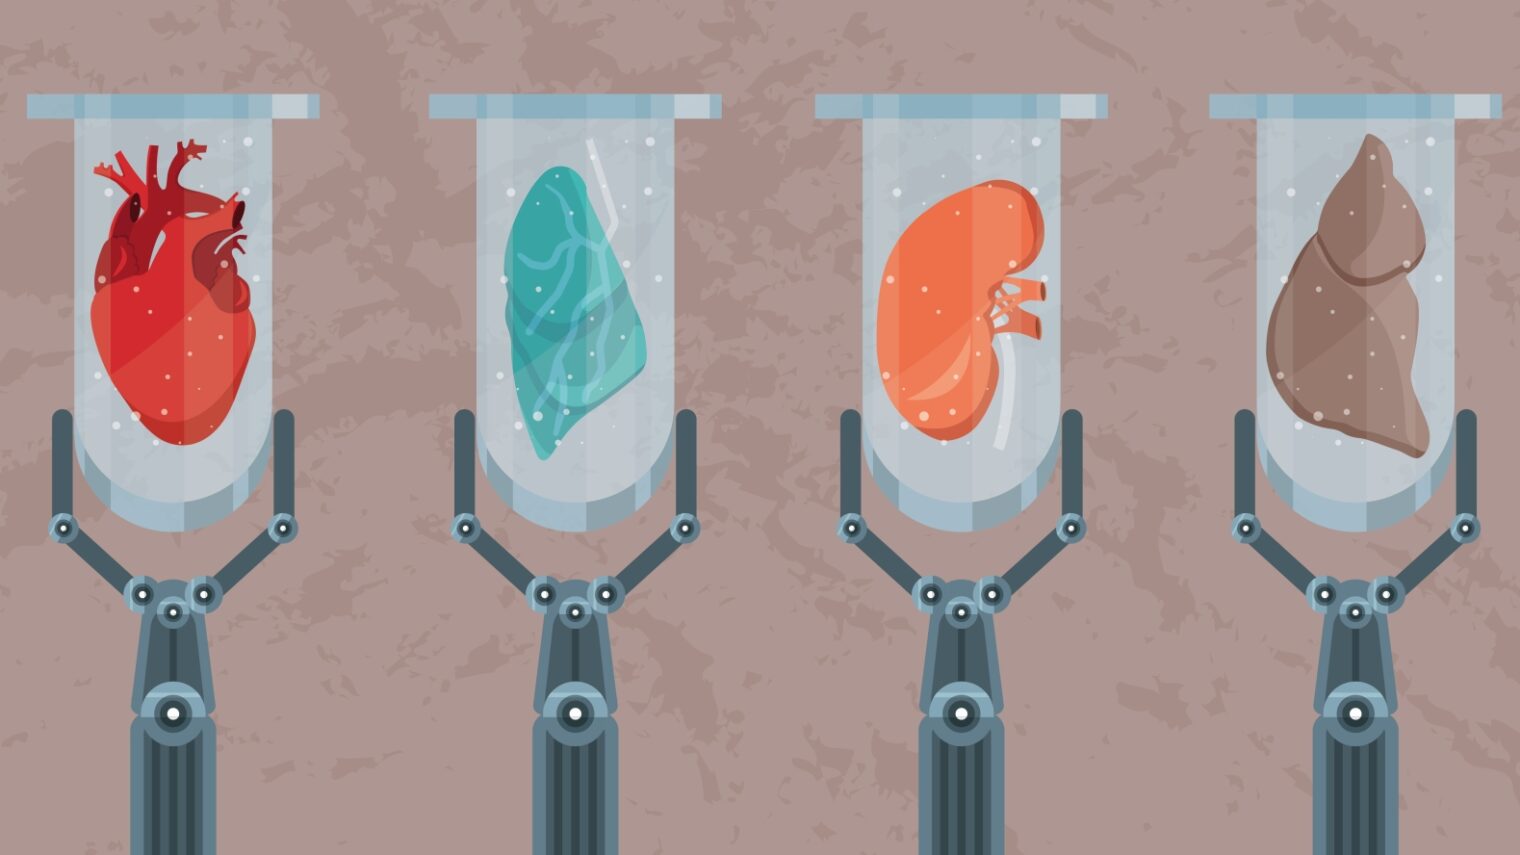 Regenerative medicine illustration by Valentina Kru via Shutterstock.com